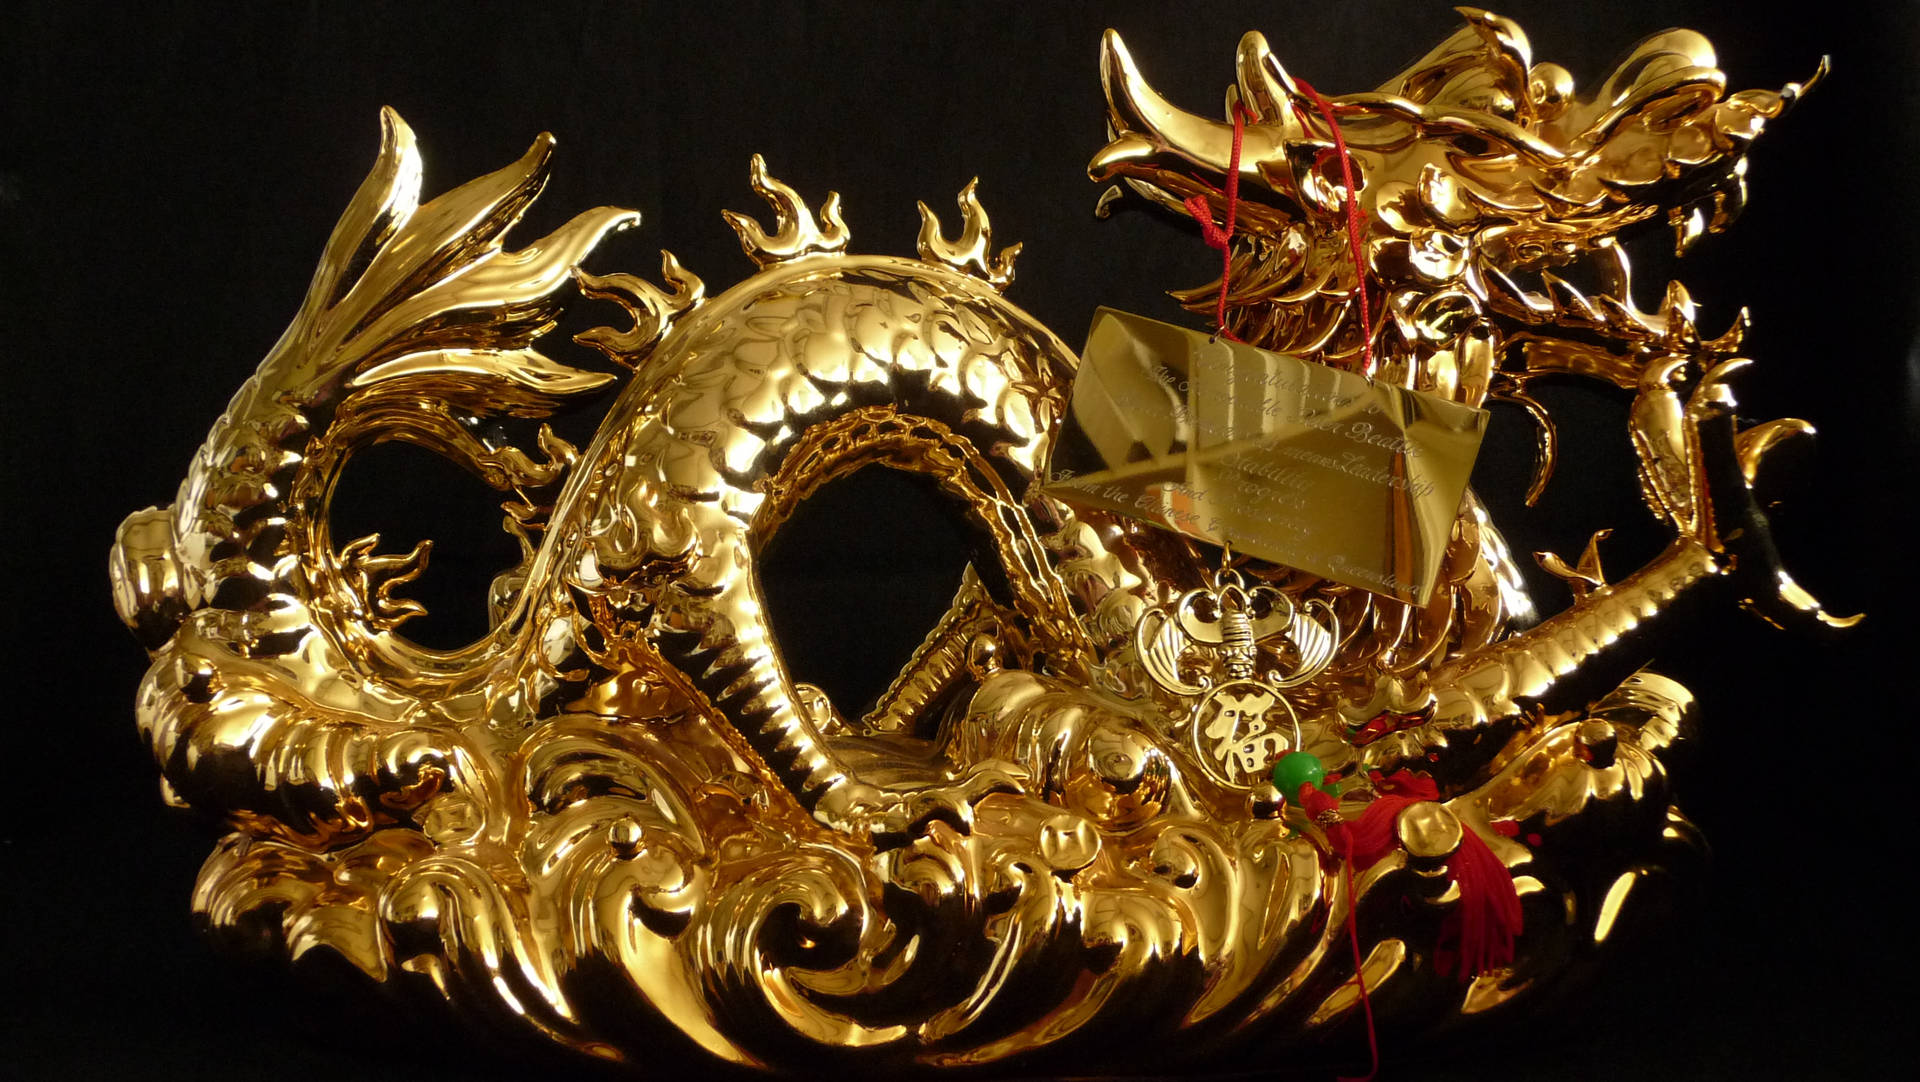 Golden Dragon Figurine Background